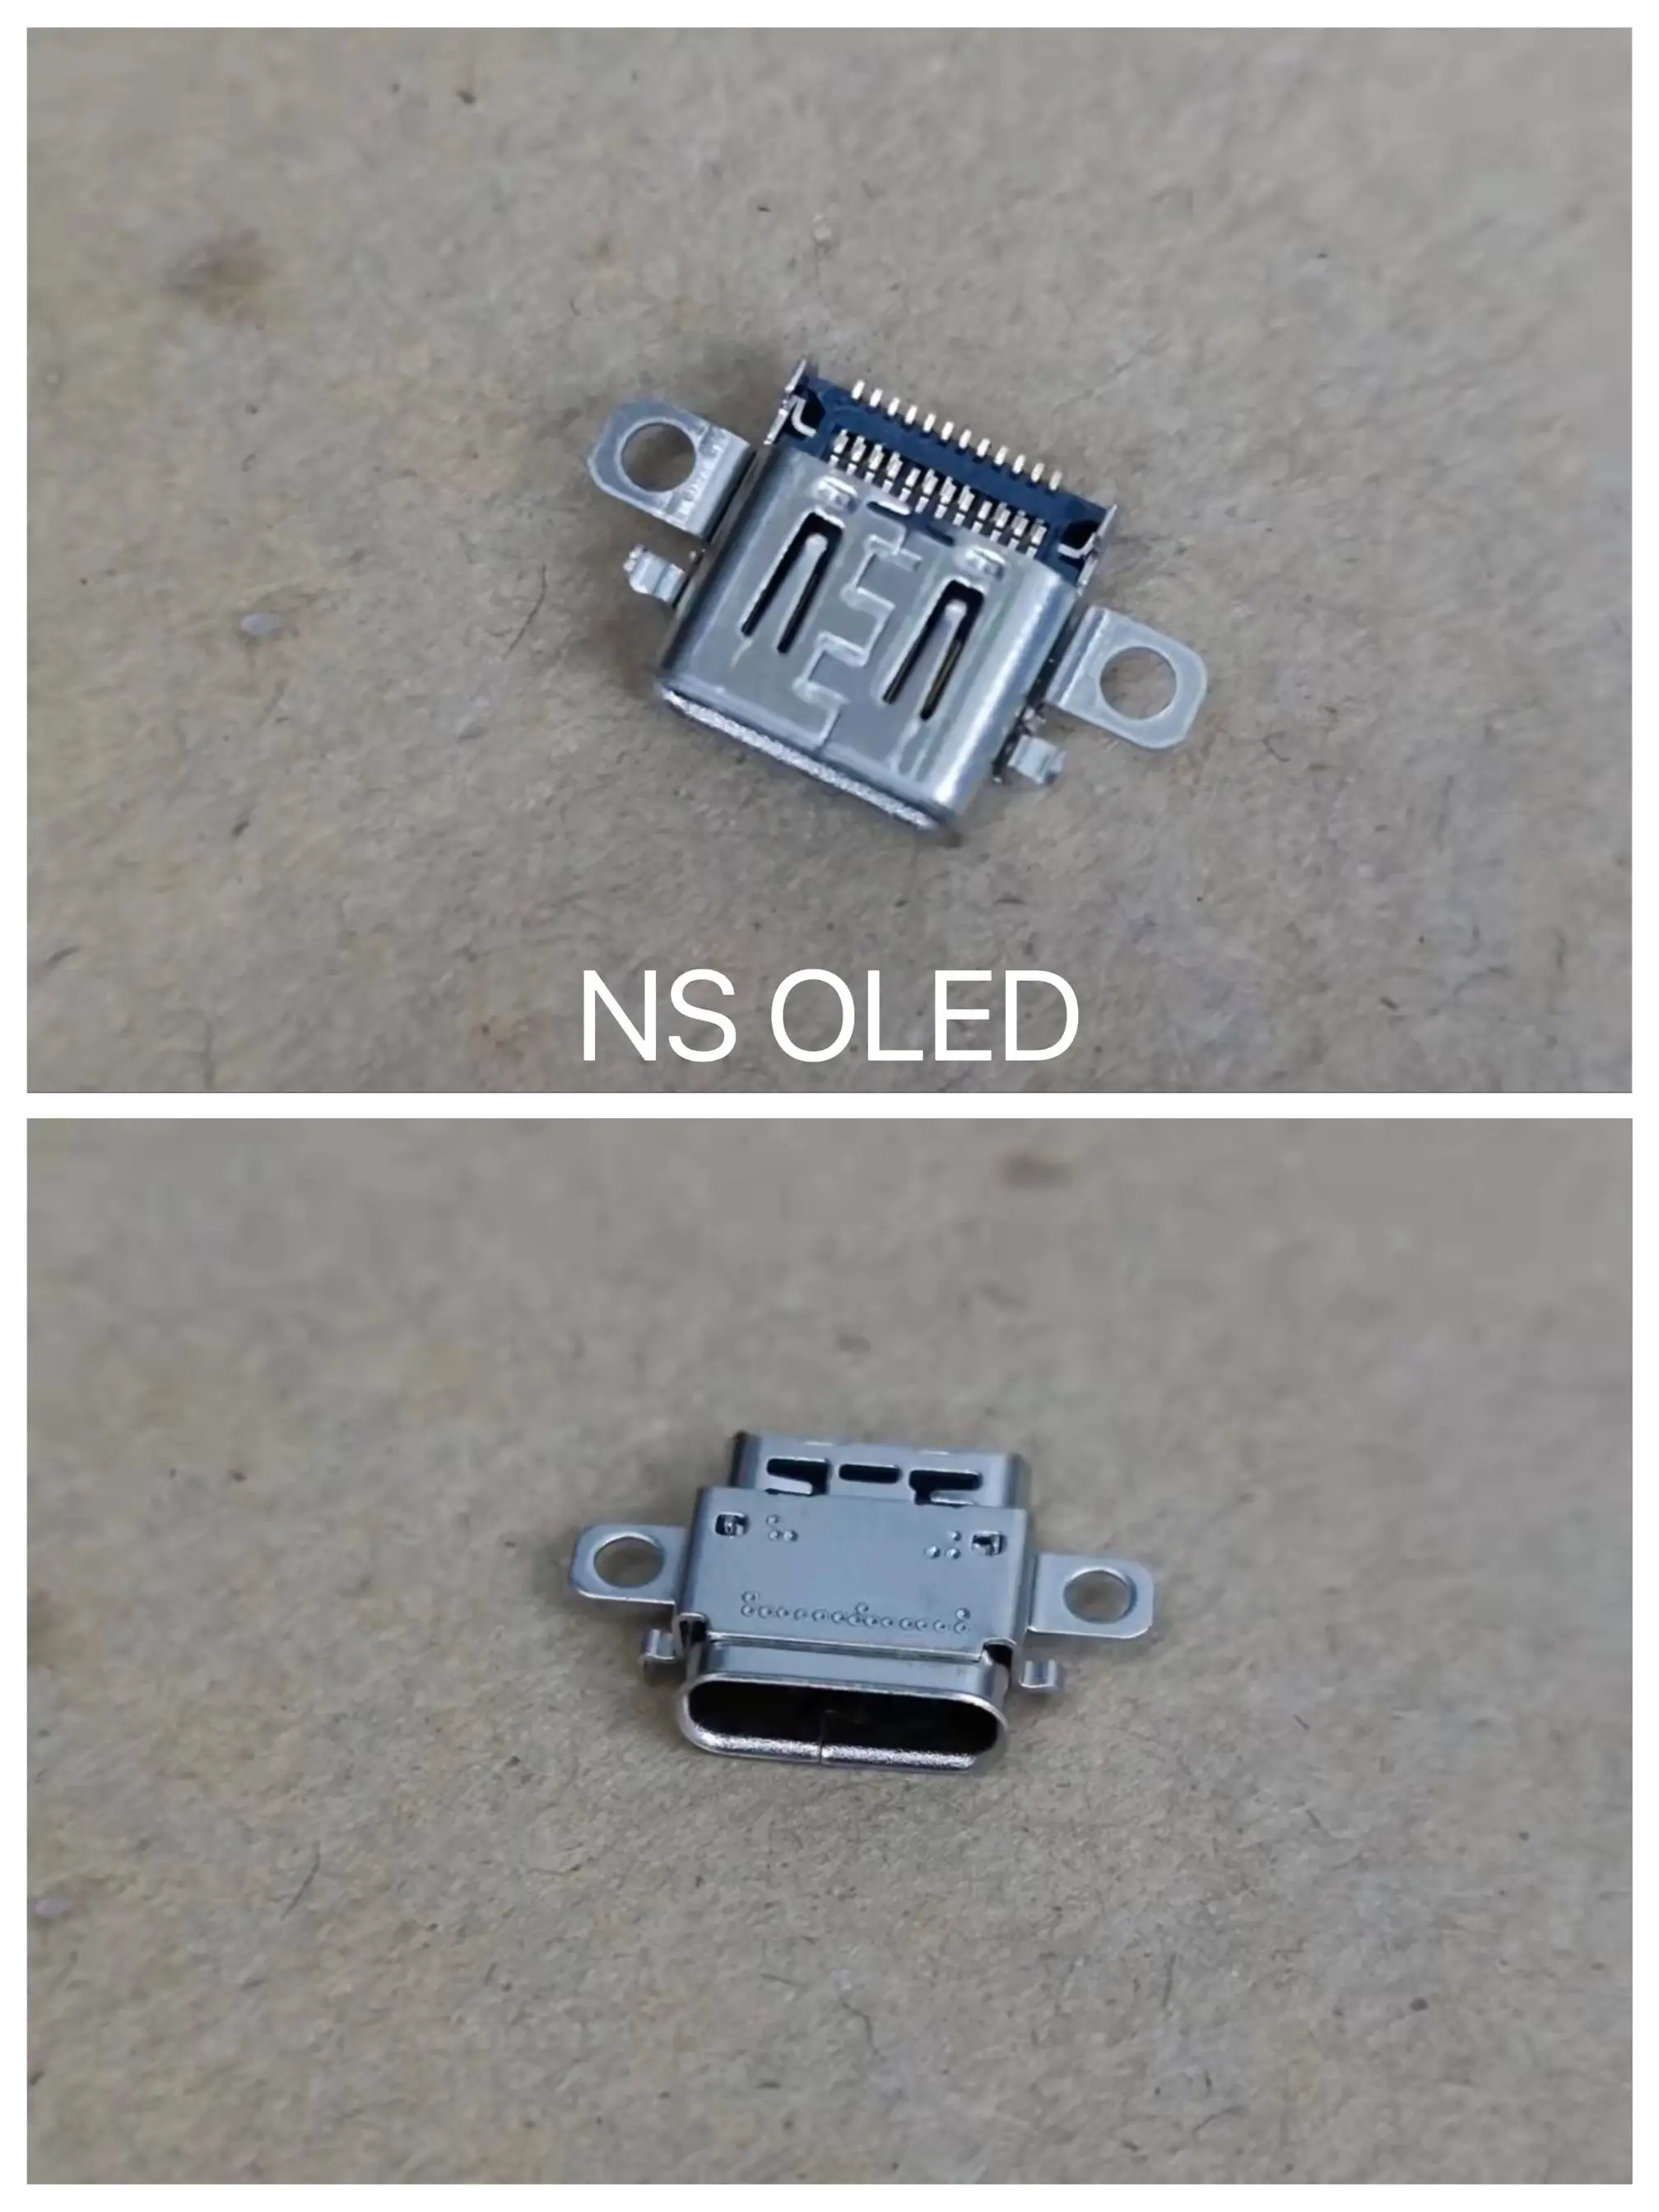 Acessórios Frete grátis Original 100% novo para Nintendo Switch OLED NS OLED CONSOLE